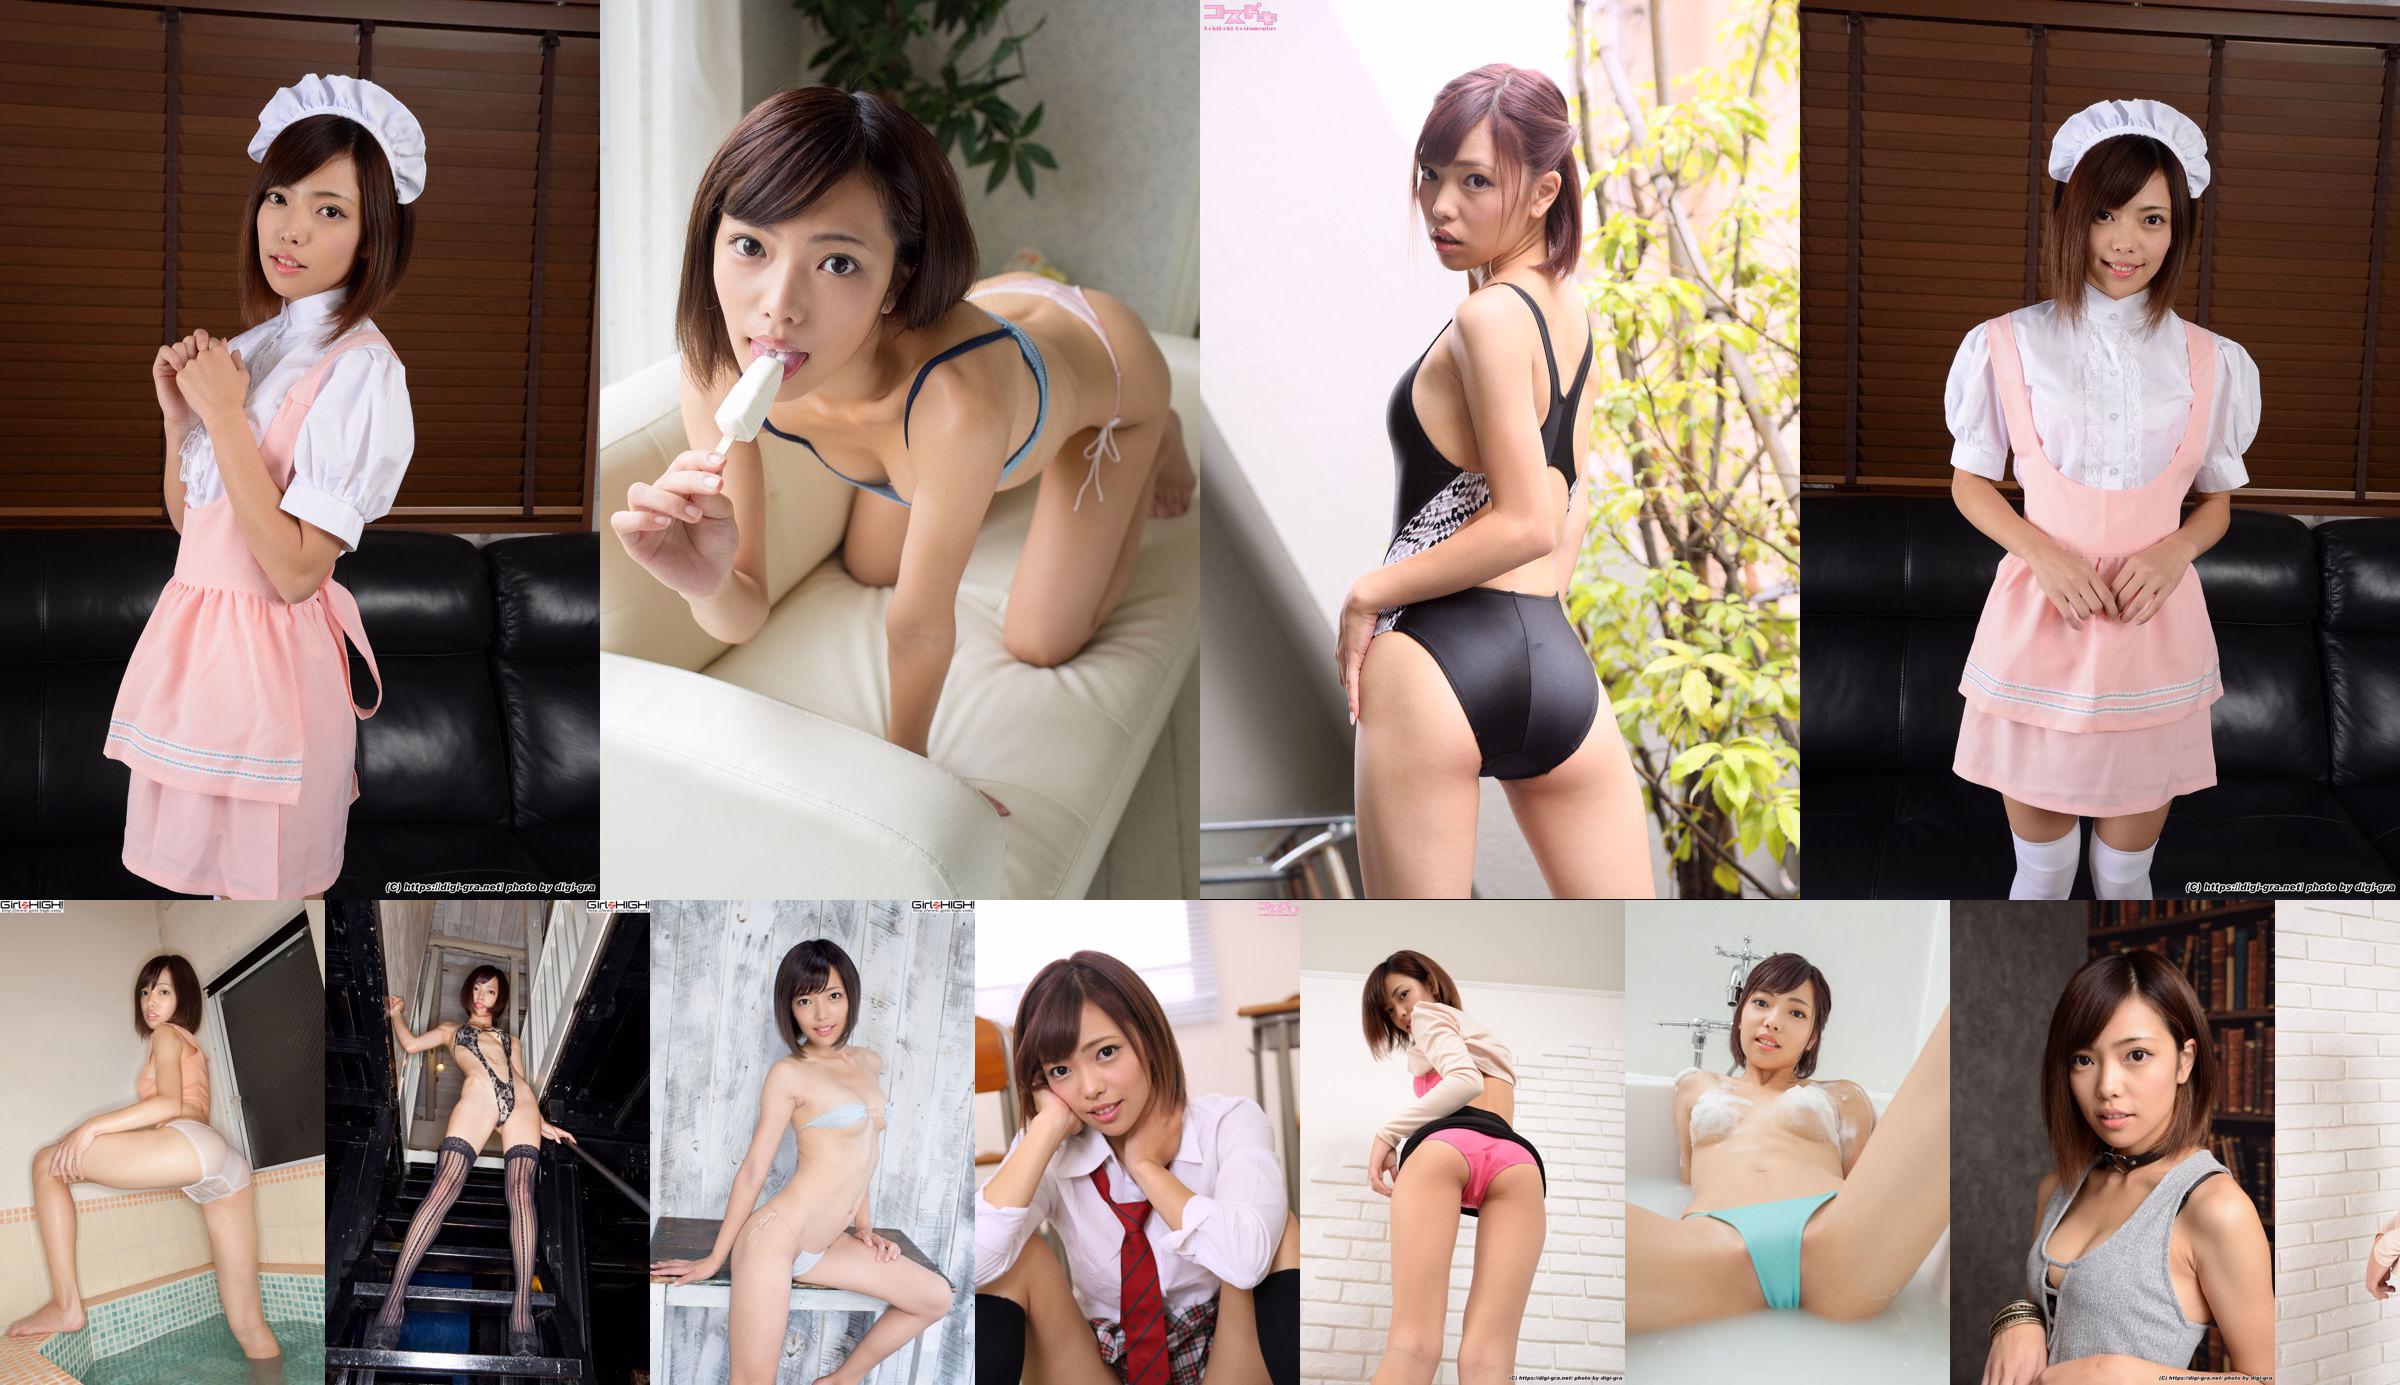 [Minisuka] Aya Hirose Limited Gallery 2.2 No.64b41a Page 1